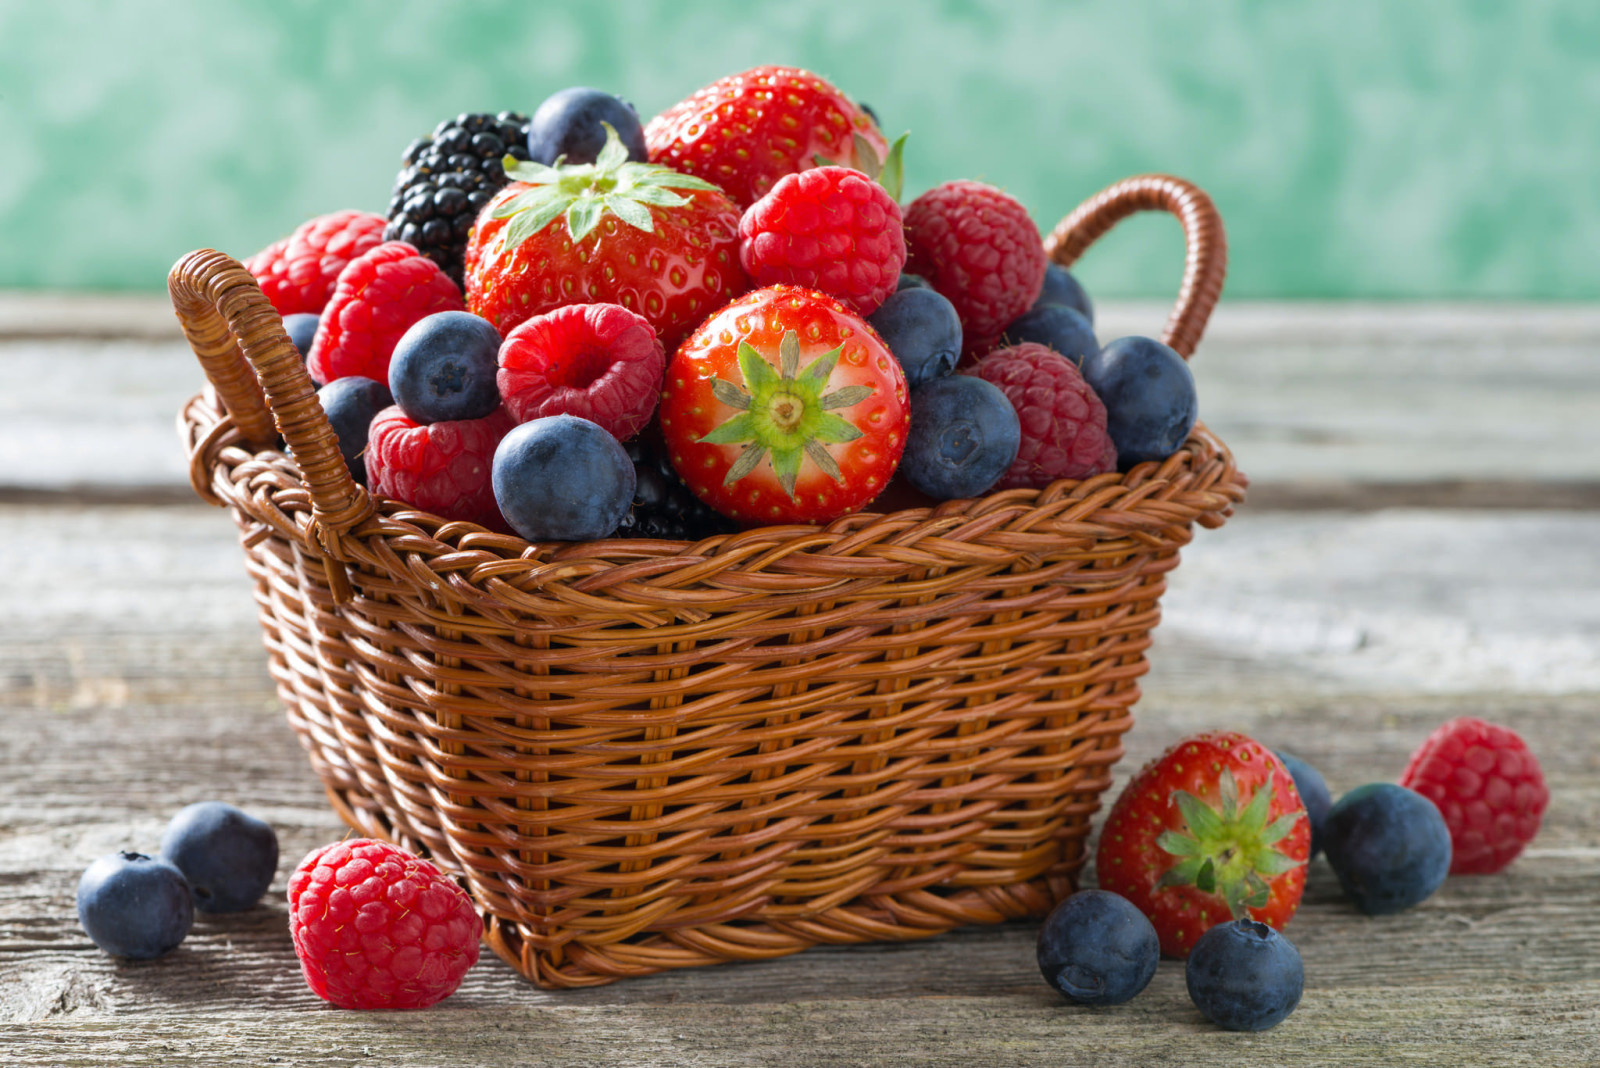 浆果, 覆盆子, 蓝莓, 草莓, 篮